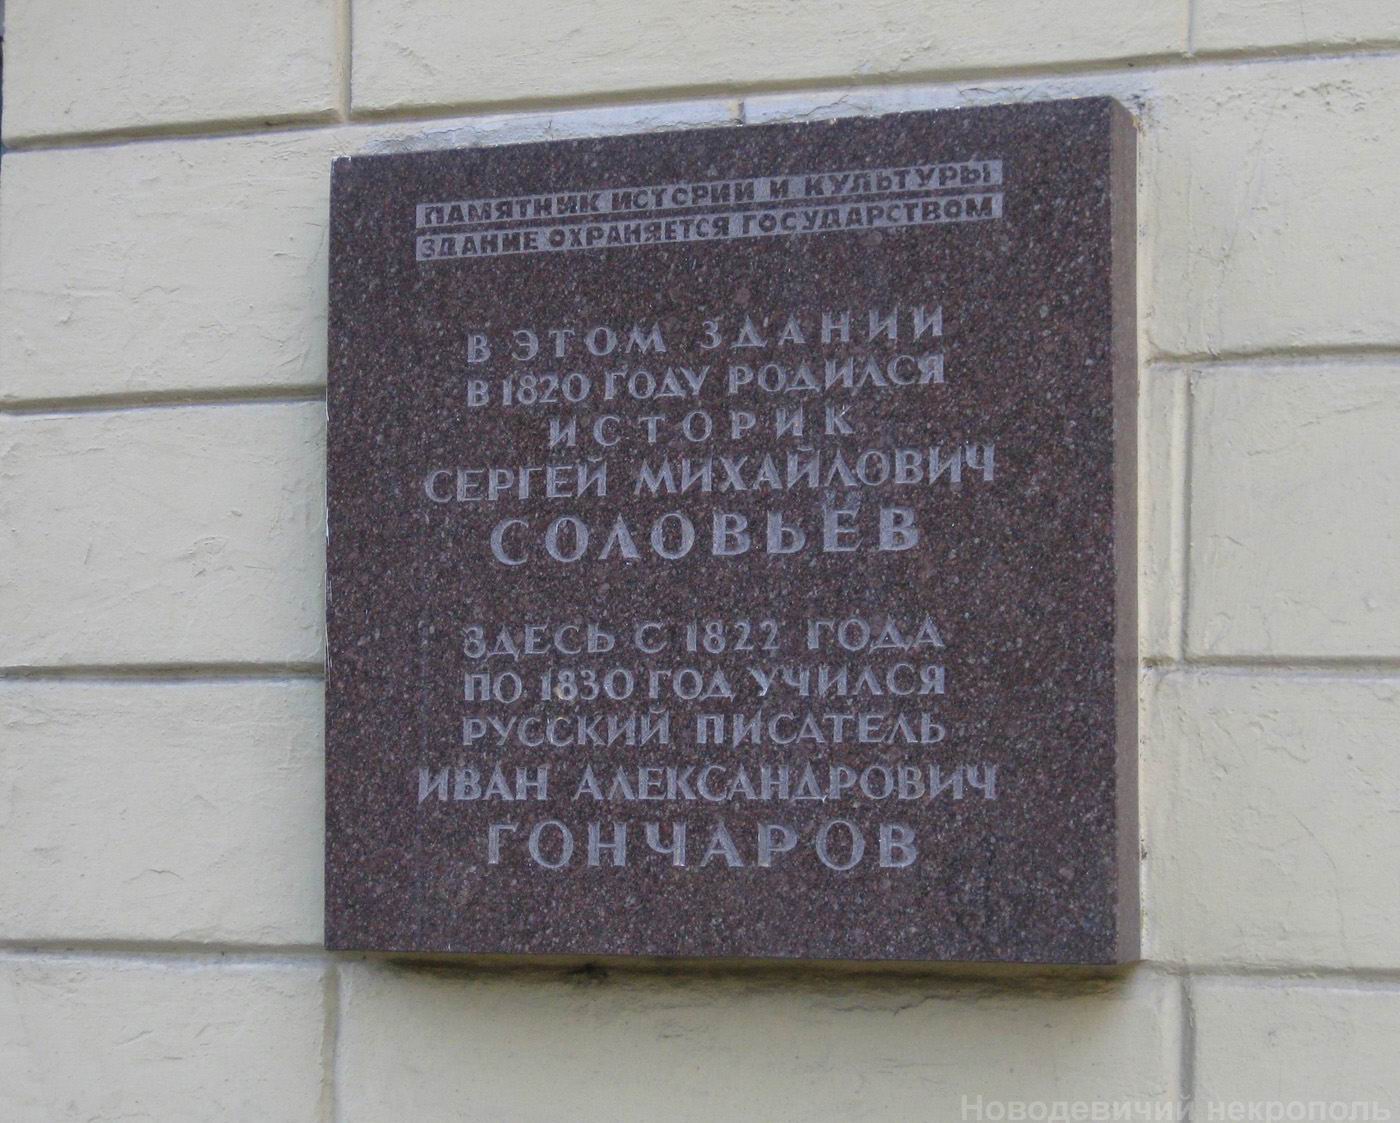 Мемориальная доска Соловьёву С.М. (1820–1879) и Гончарову И.А. (1812–1891), арх. В.А.Кожевников, на улице Остоженка, дом 38, открыта в 1980 взамен двух досок дореволюционного времени.